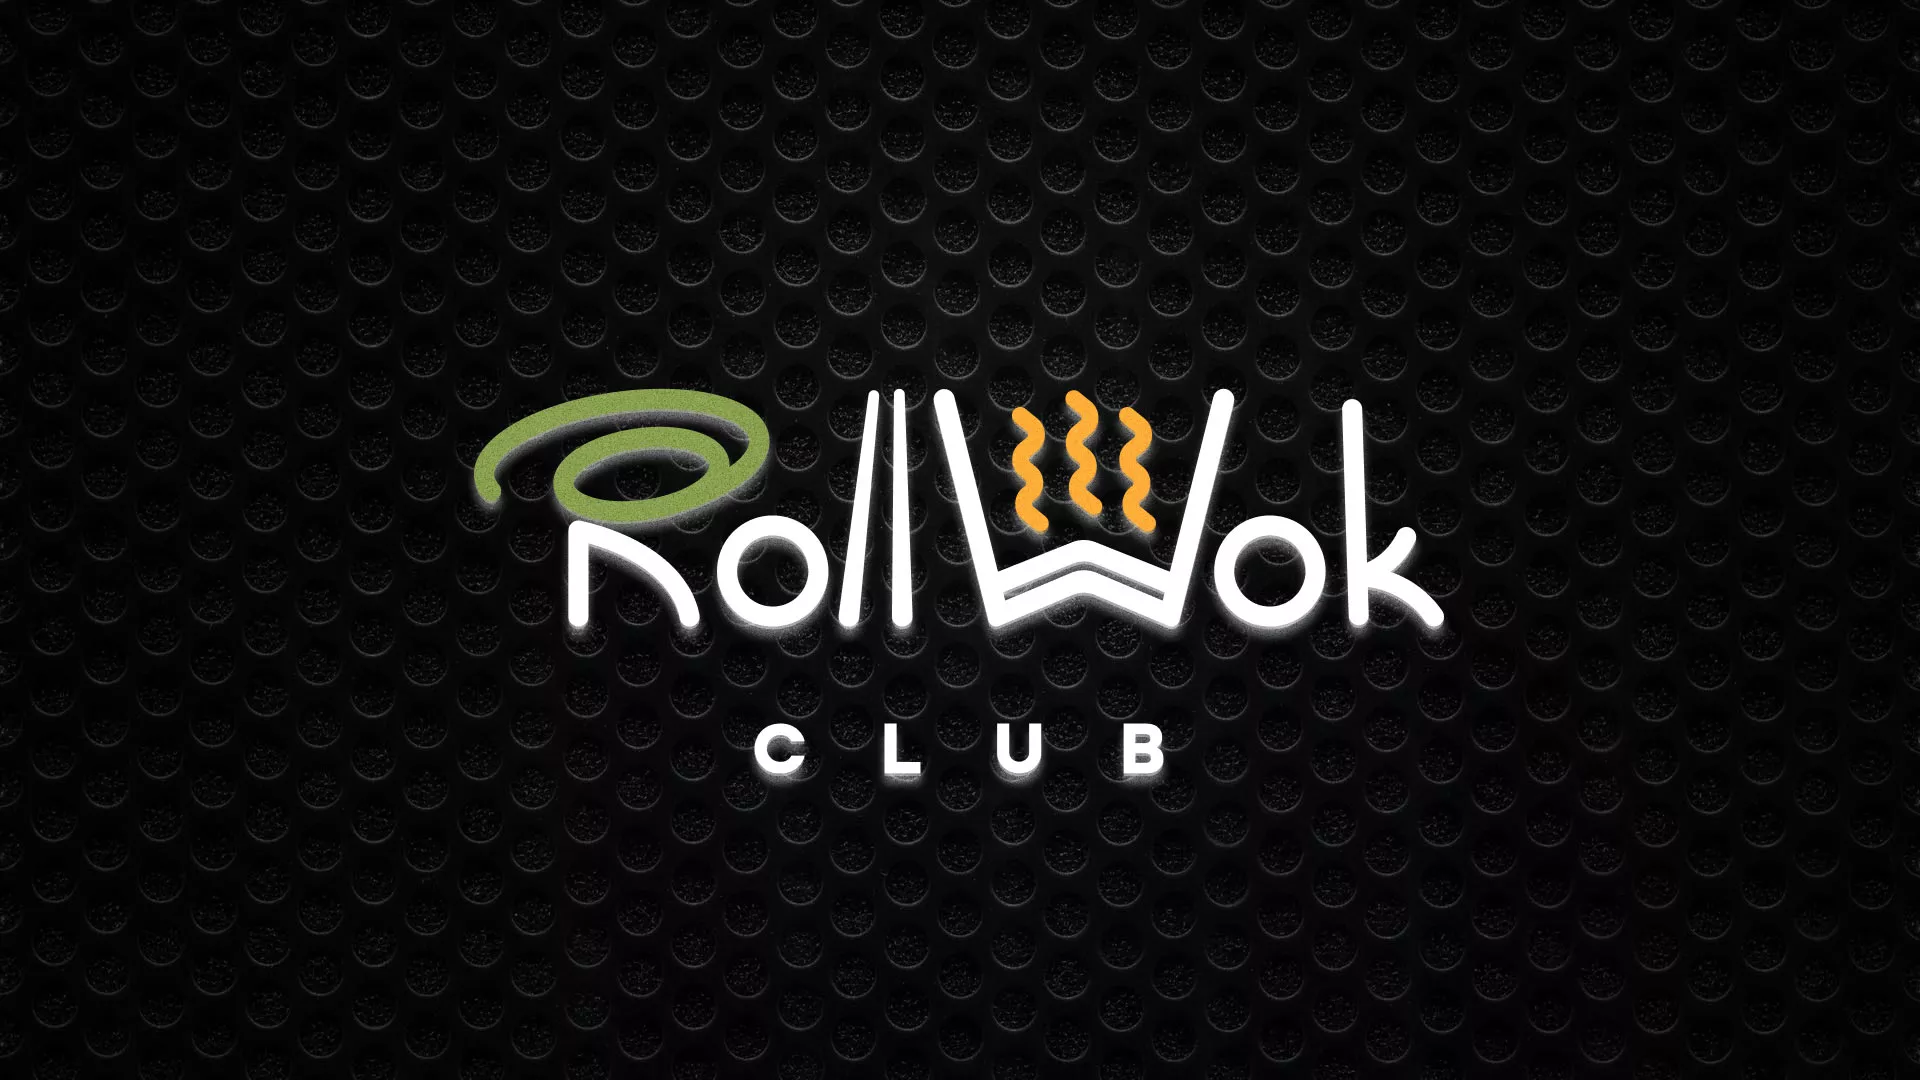 Брендирование торговых точек суши-бара «Roll Wok Club» в Малоярославце